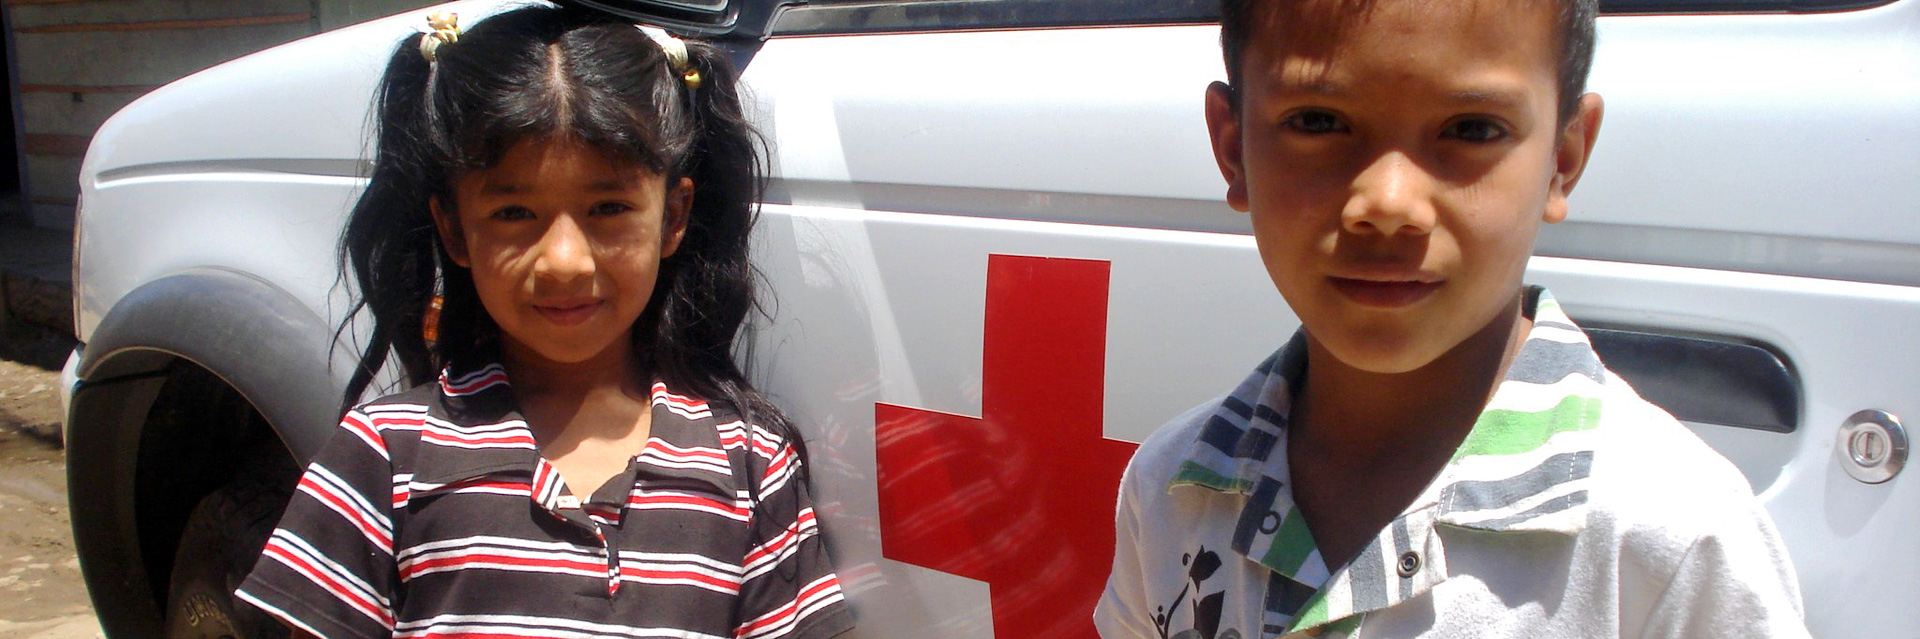 Foto: Ein Mädchen und ein Junge in Kolumbien vor einem Rotkreuz-Fahrzeug